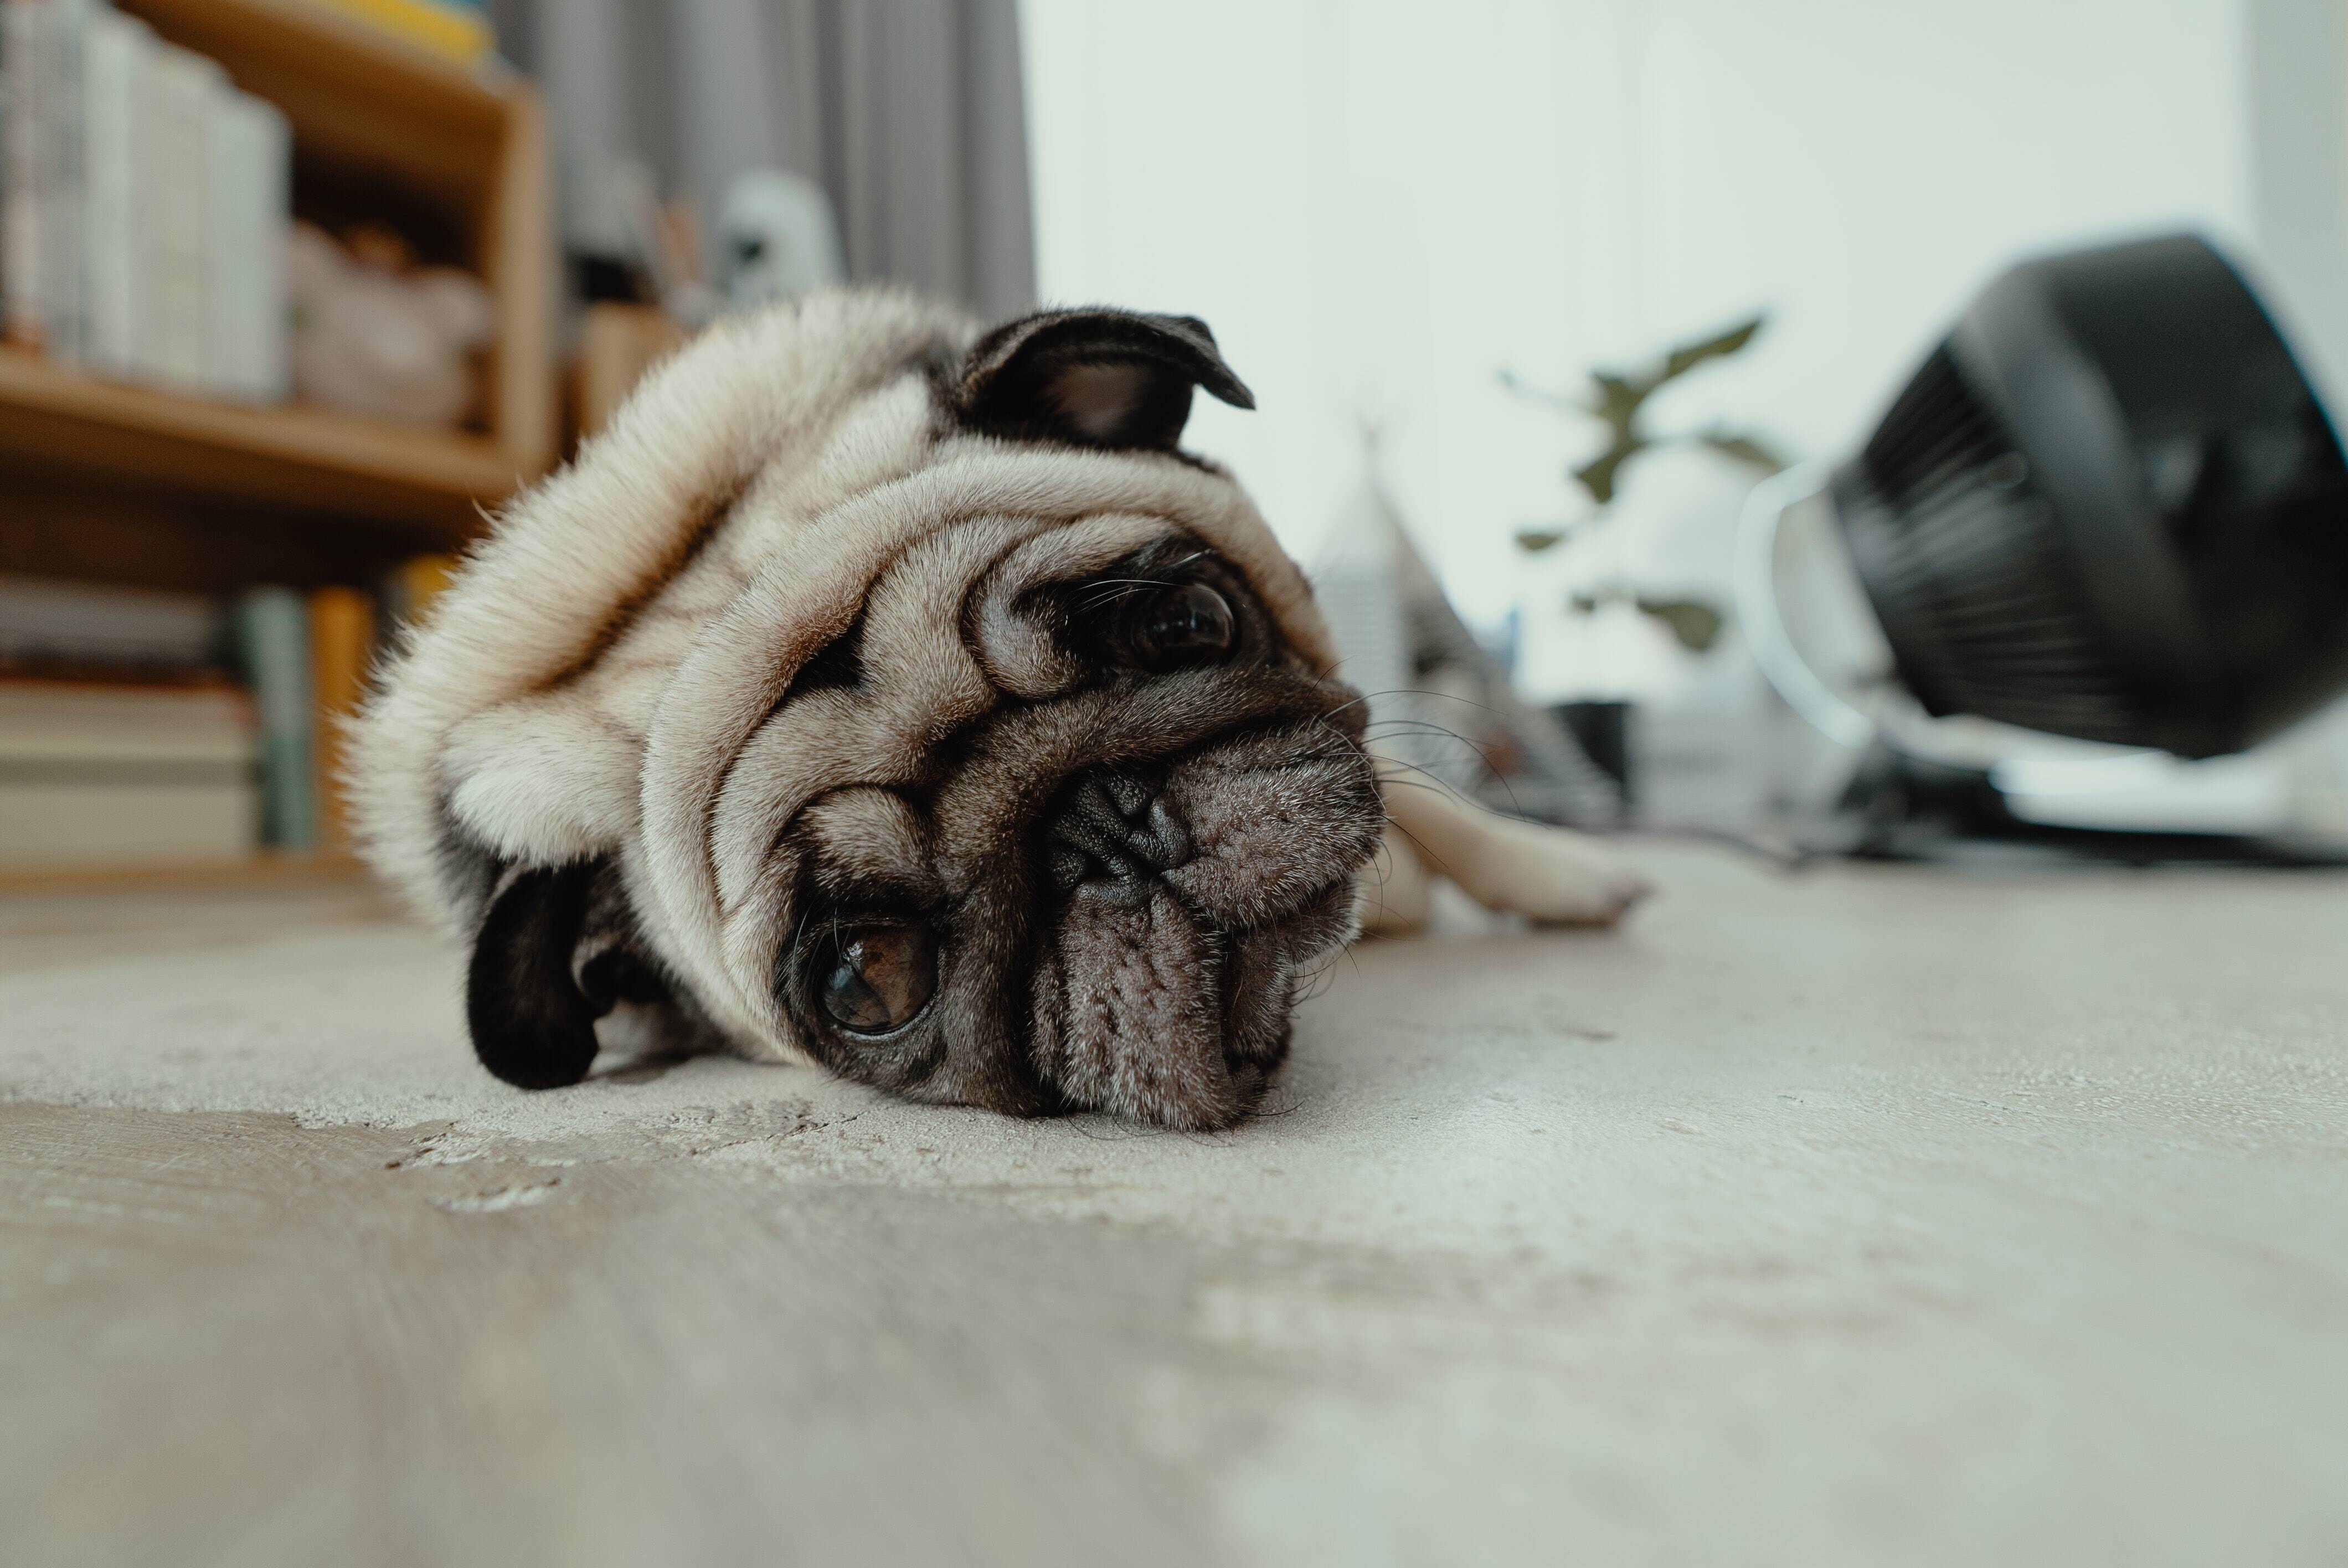 Um cachorro com excesso de gases pode esvaziar uma sala. Foto: Jc-gellidon/Unsplash